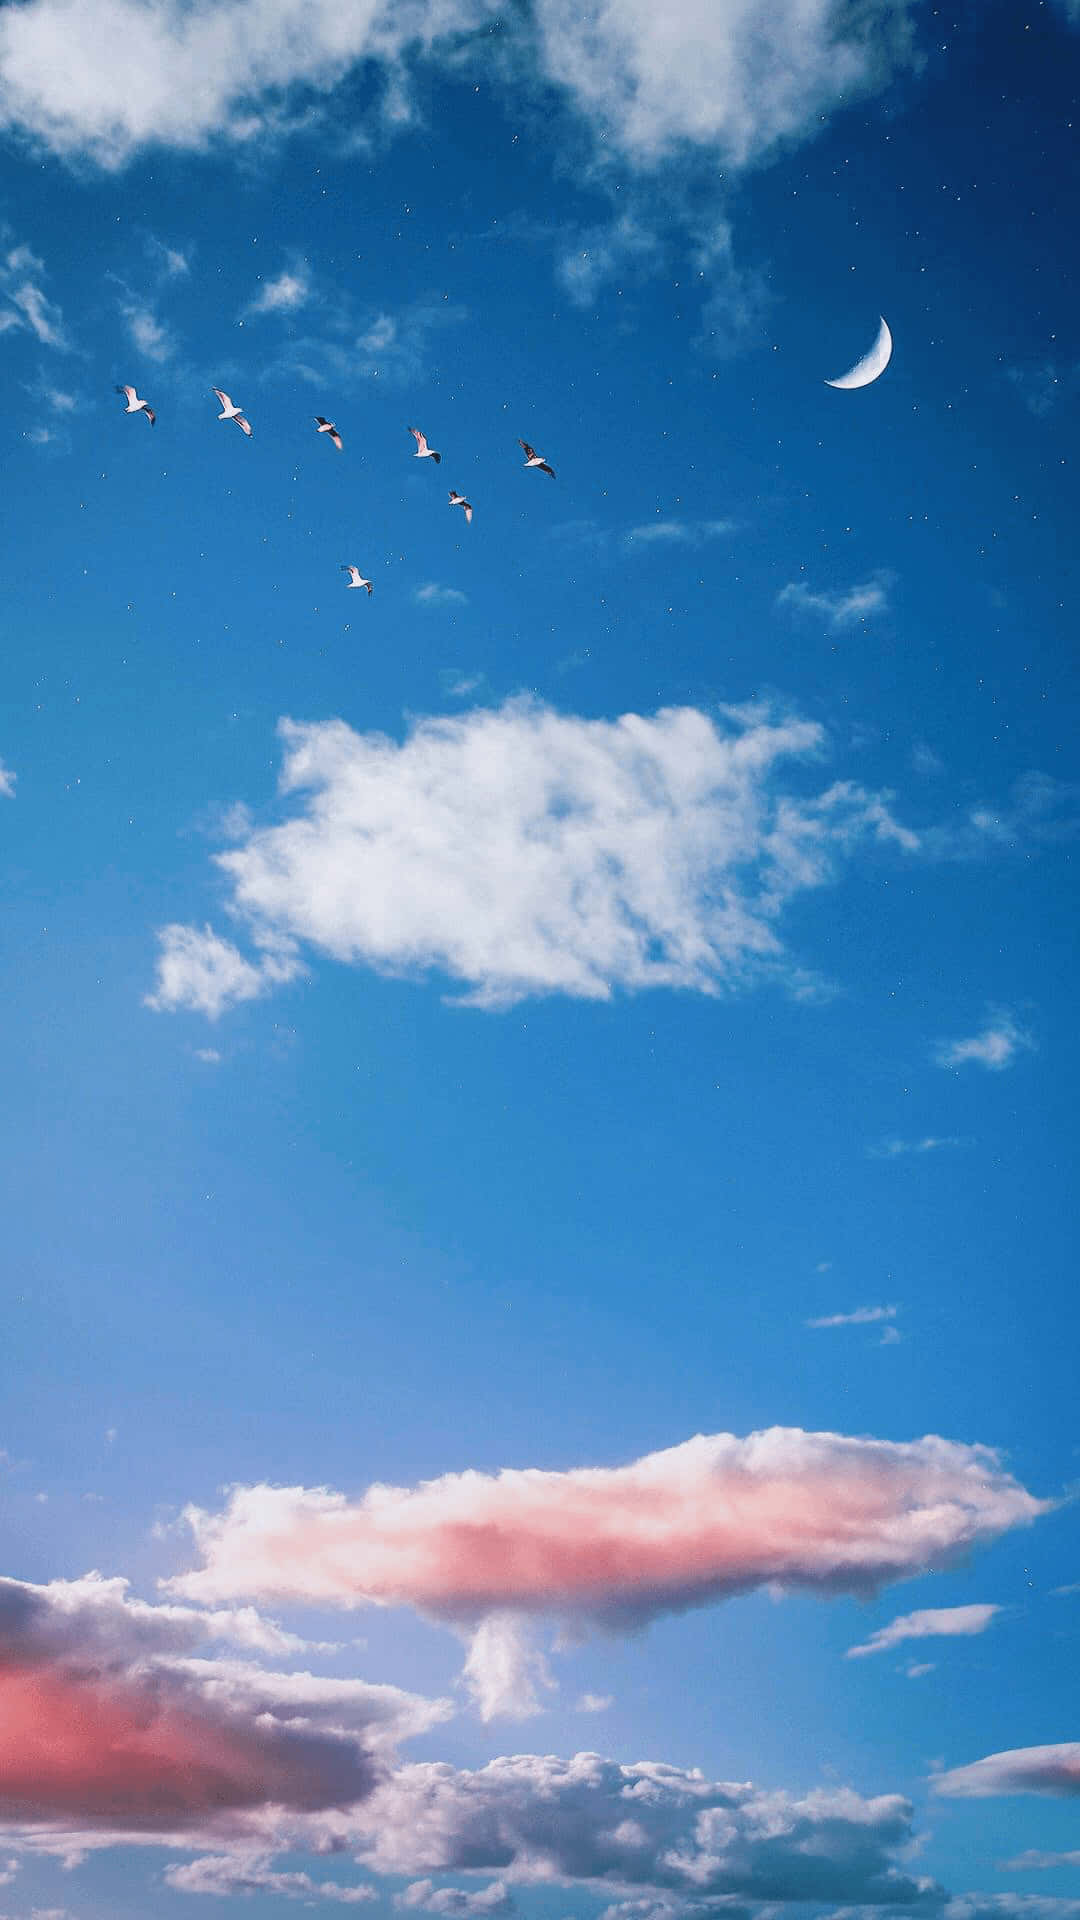 Gönndir Eine Pause Und Erfreue Dich An Der Schönheit Der Wolken. Wallpaper